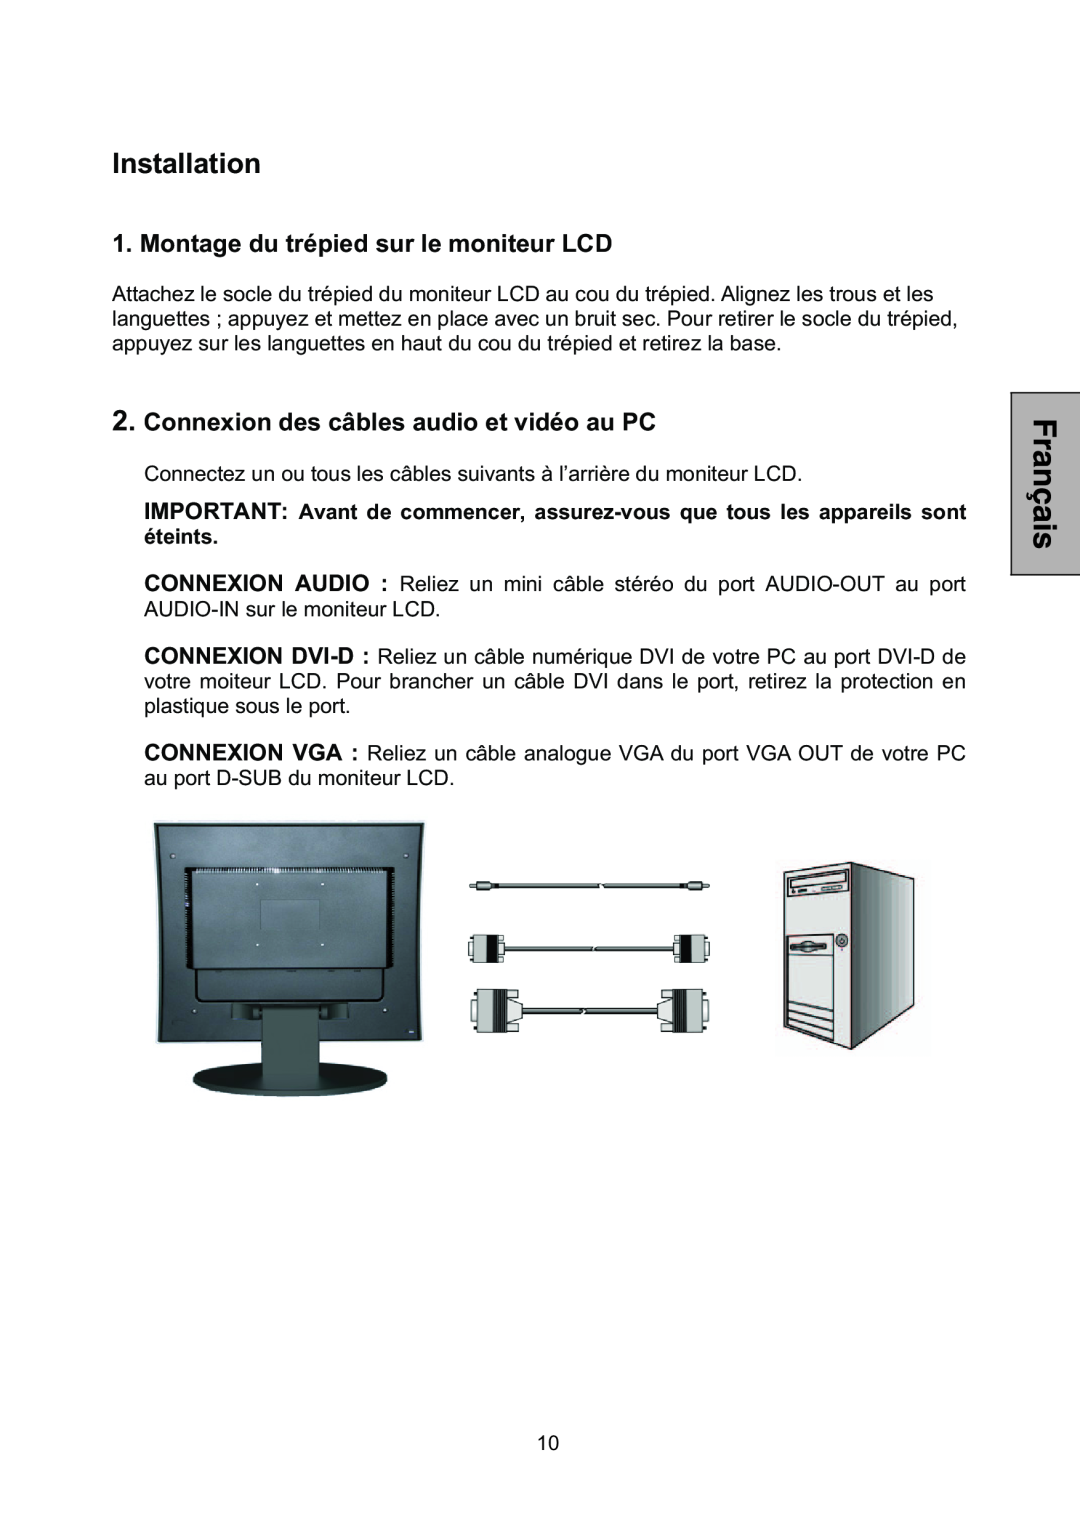 Westinghouse L1928NV manual Installation, Montage du trépied sur le moniteur LCD, Connexion des câbles audio et vidéo au PC 